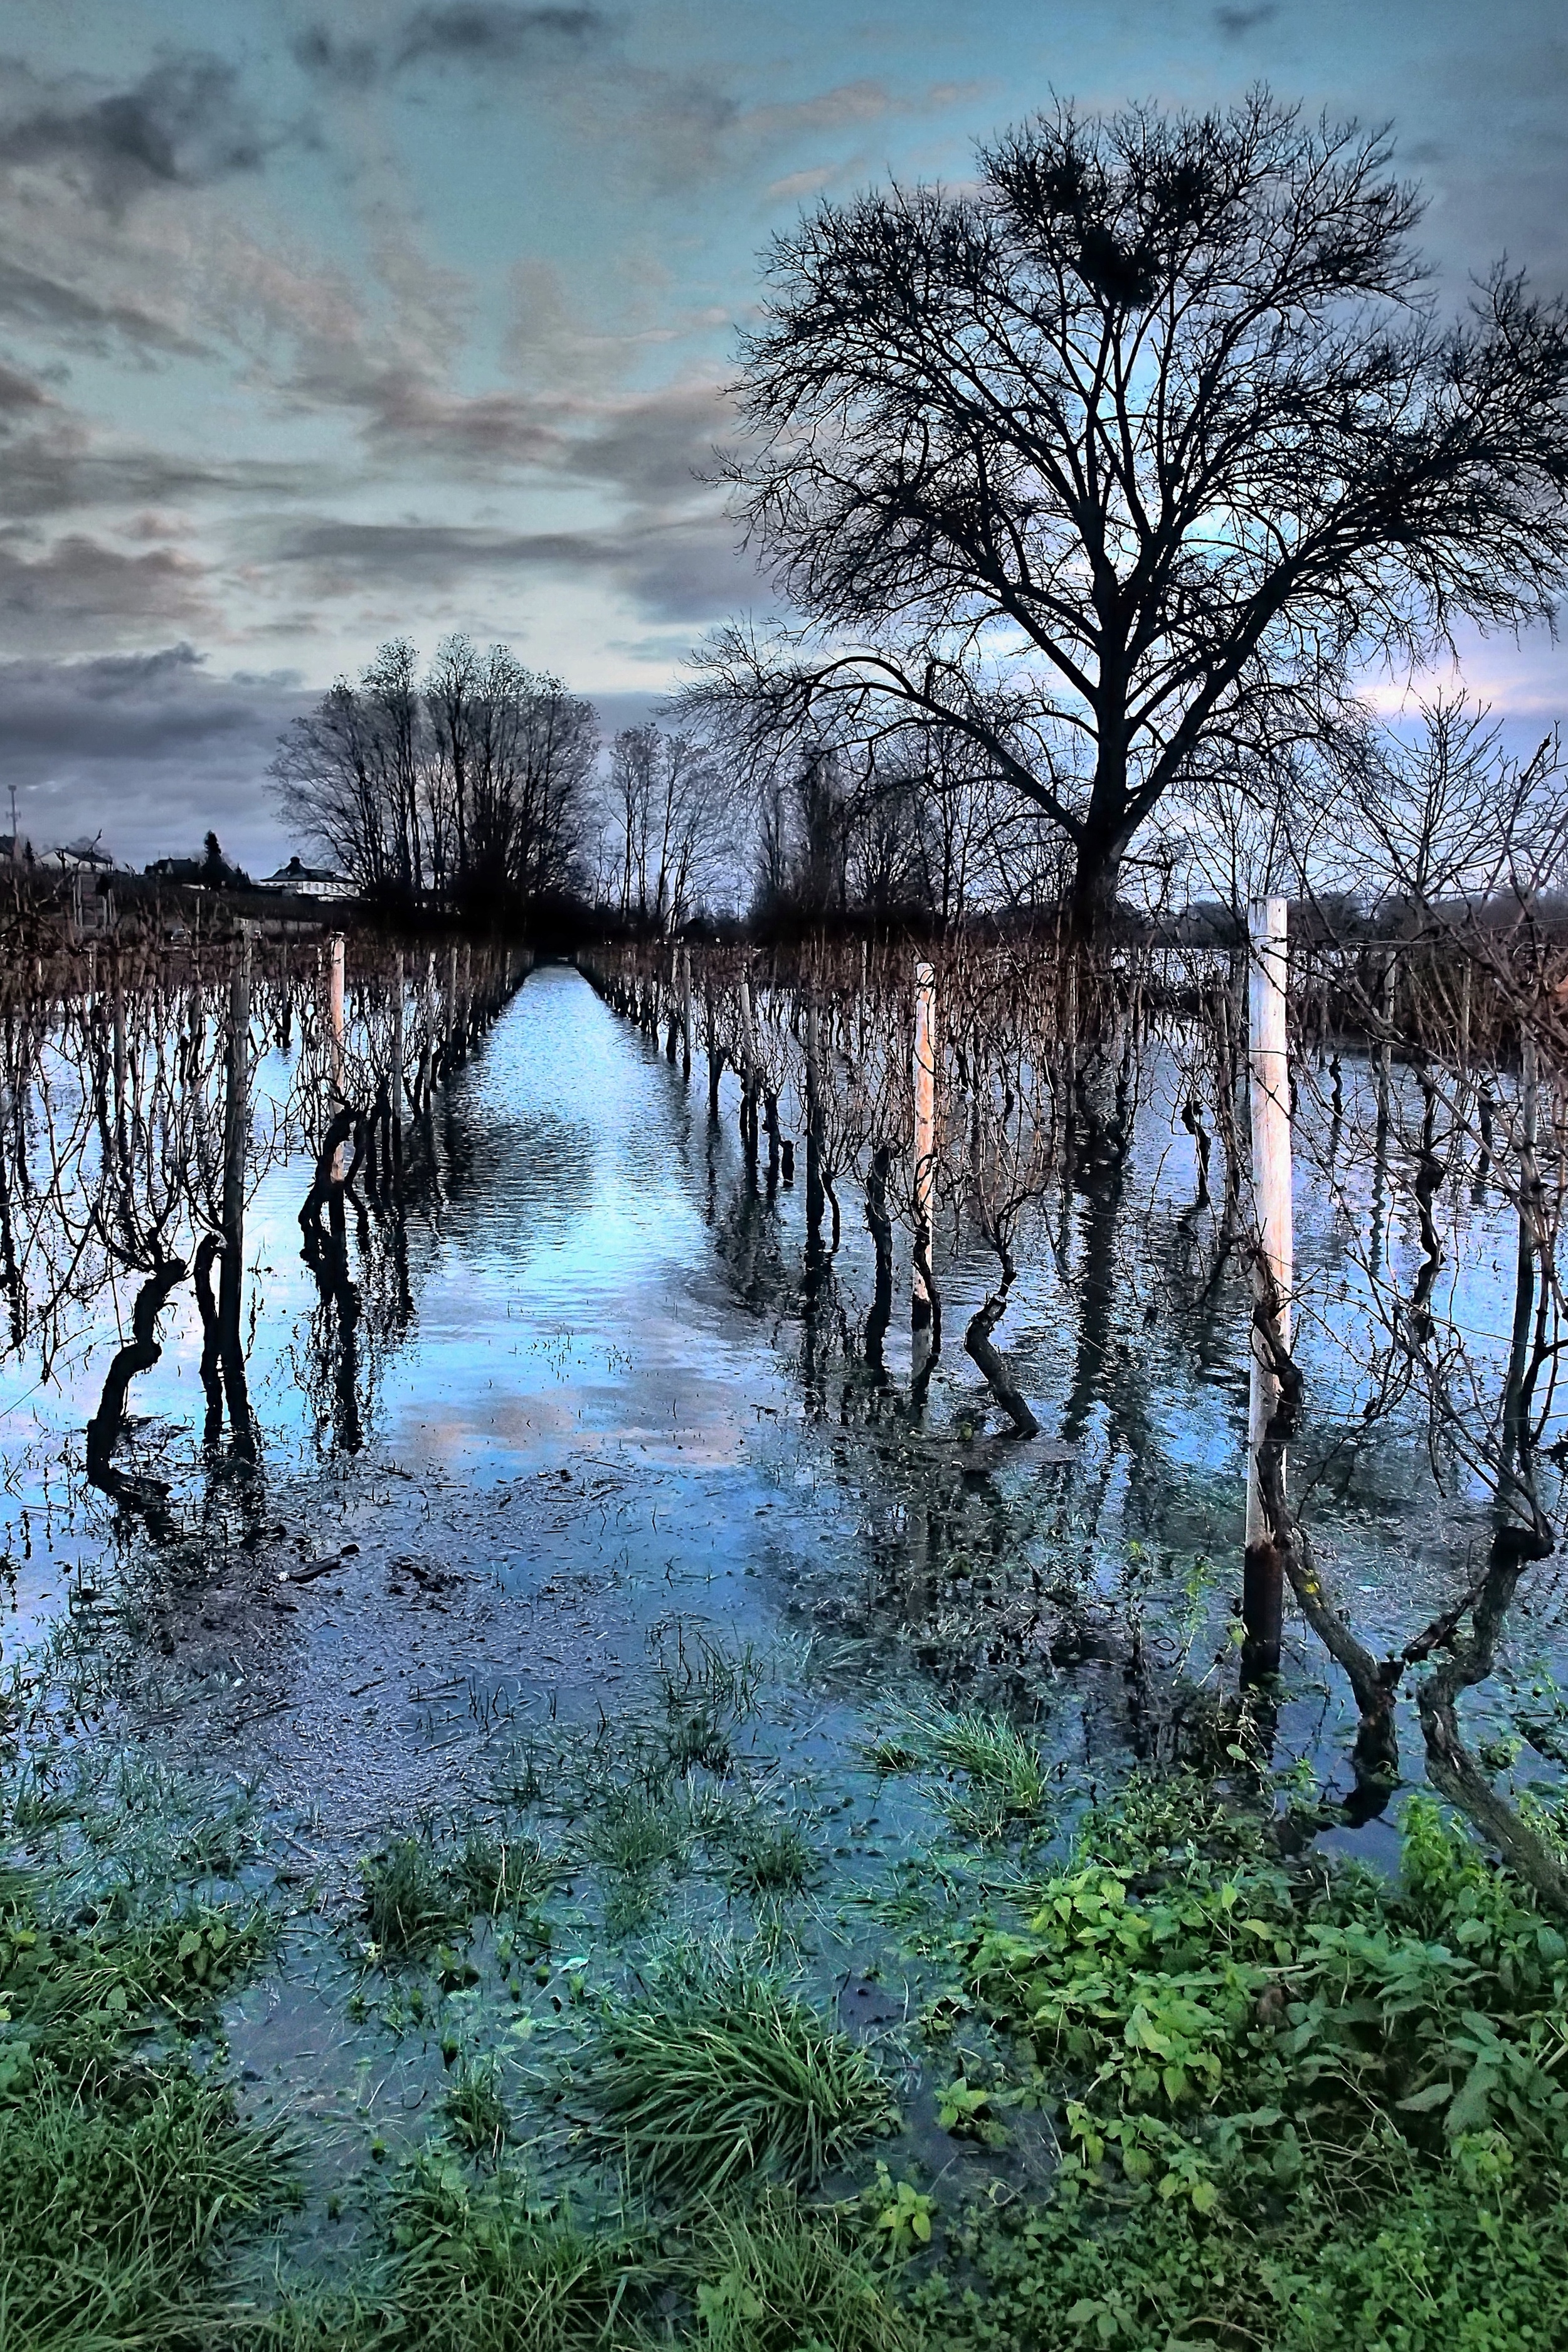    NYE 2012 Rhine's Vines in Flood EP3 Zuiko 12mm   